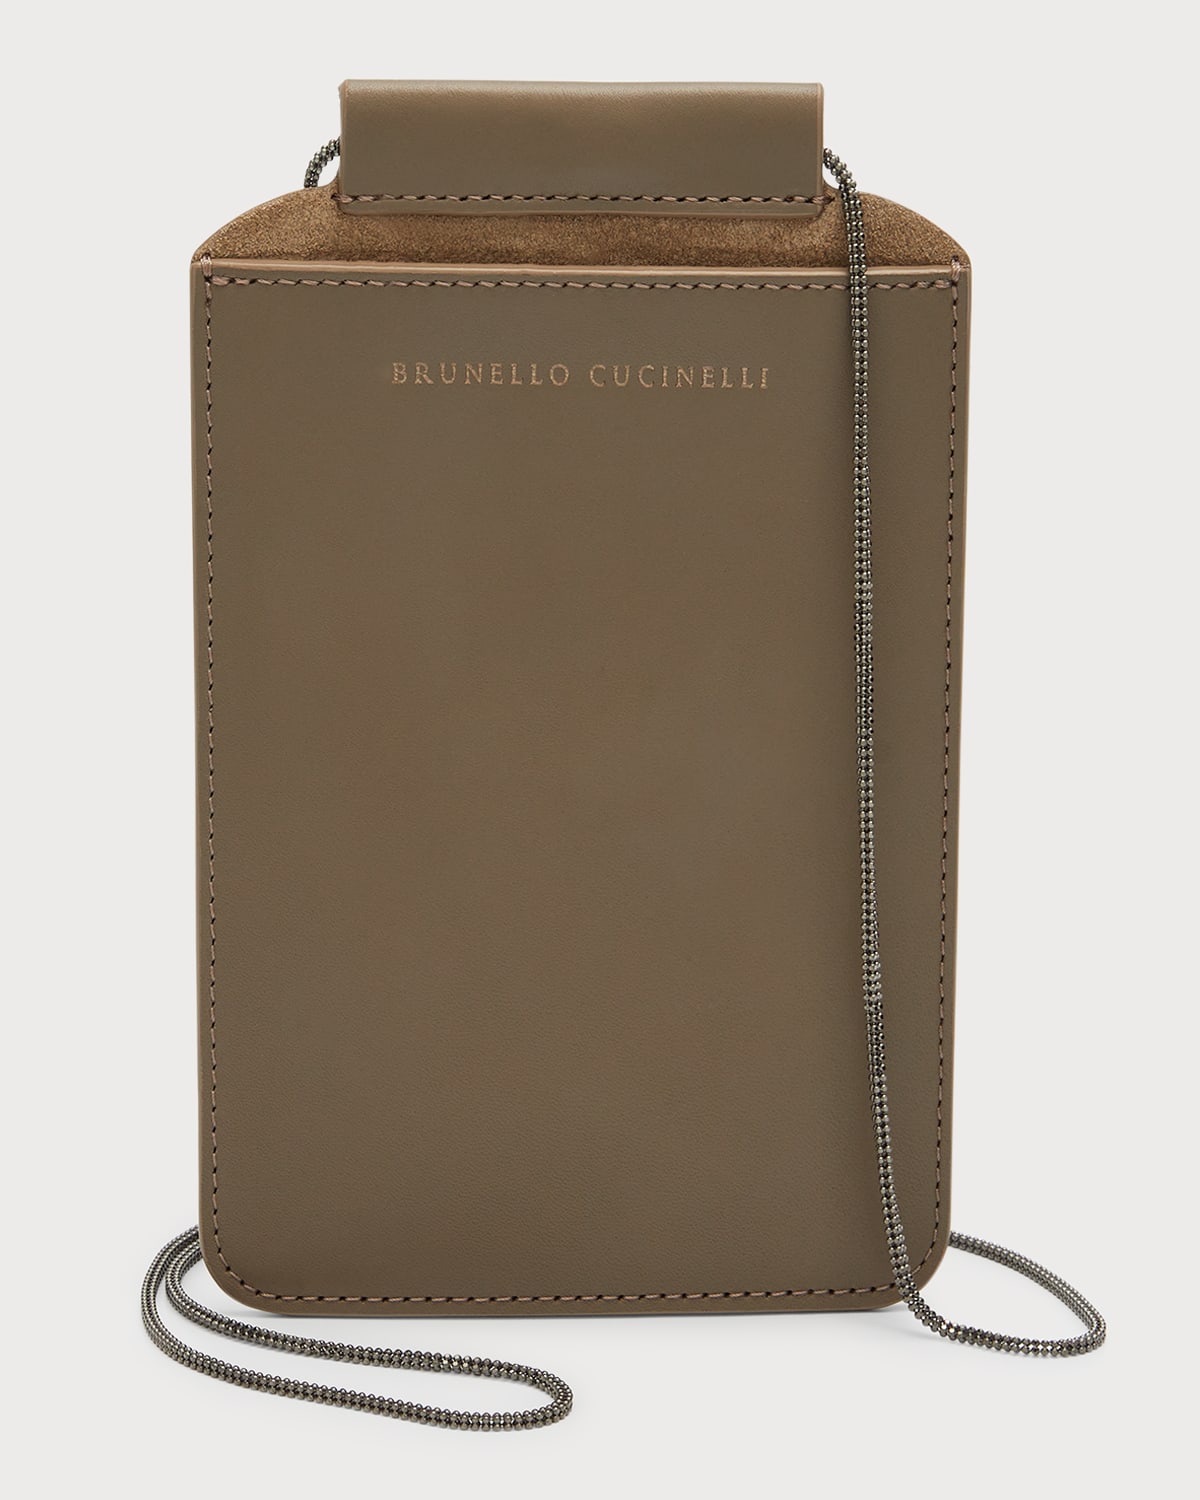 Shop Brunello Cucinelli Napa Leather Phone Case W/ Monili Chain Strap In Brown